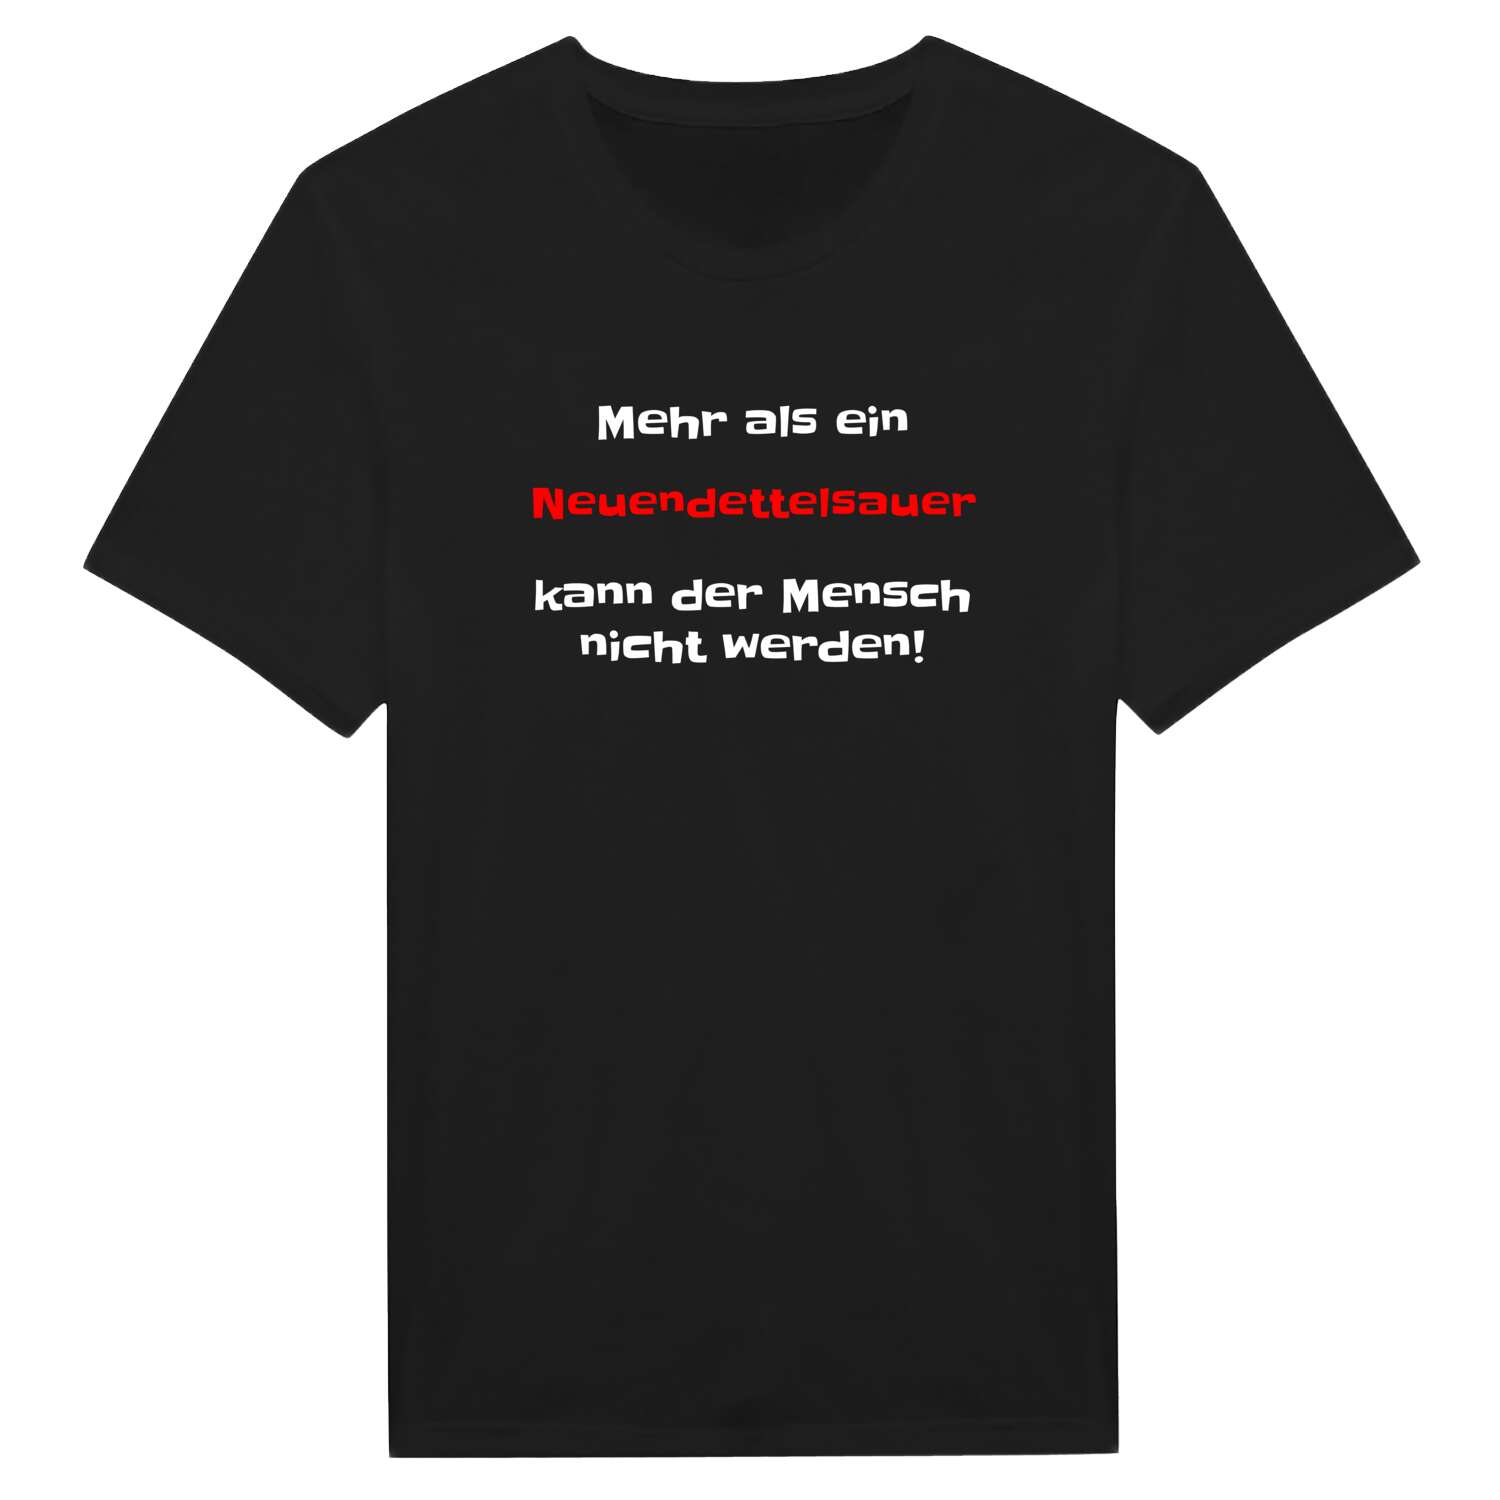 Neuendettelsau T-Shirt »Mehr als ein«